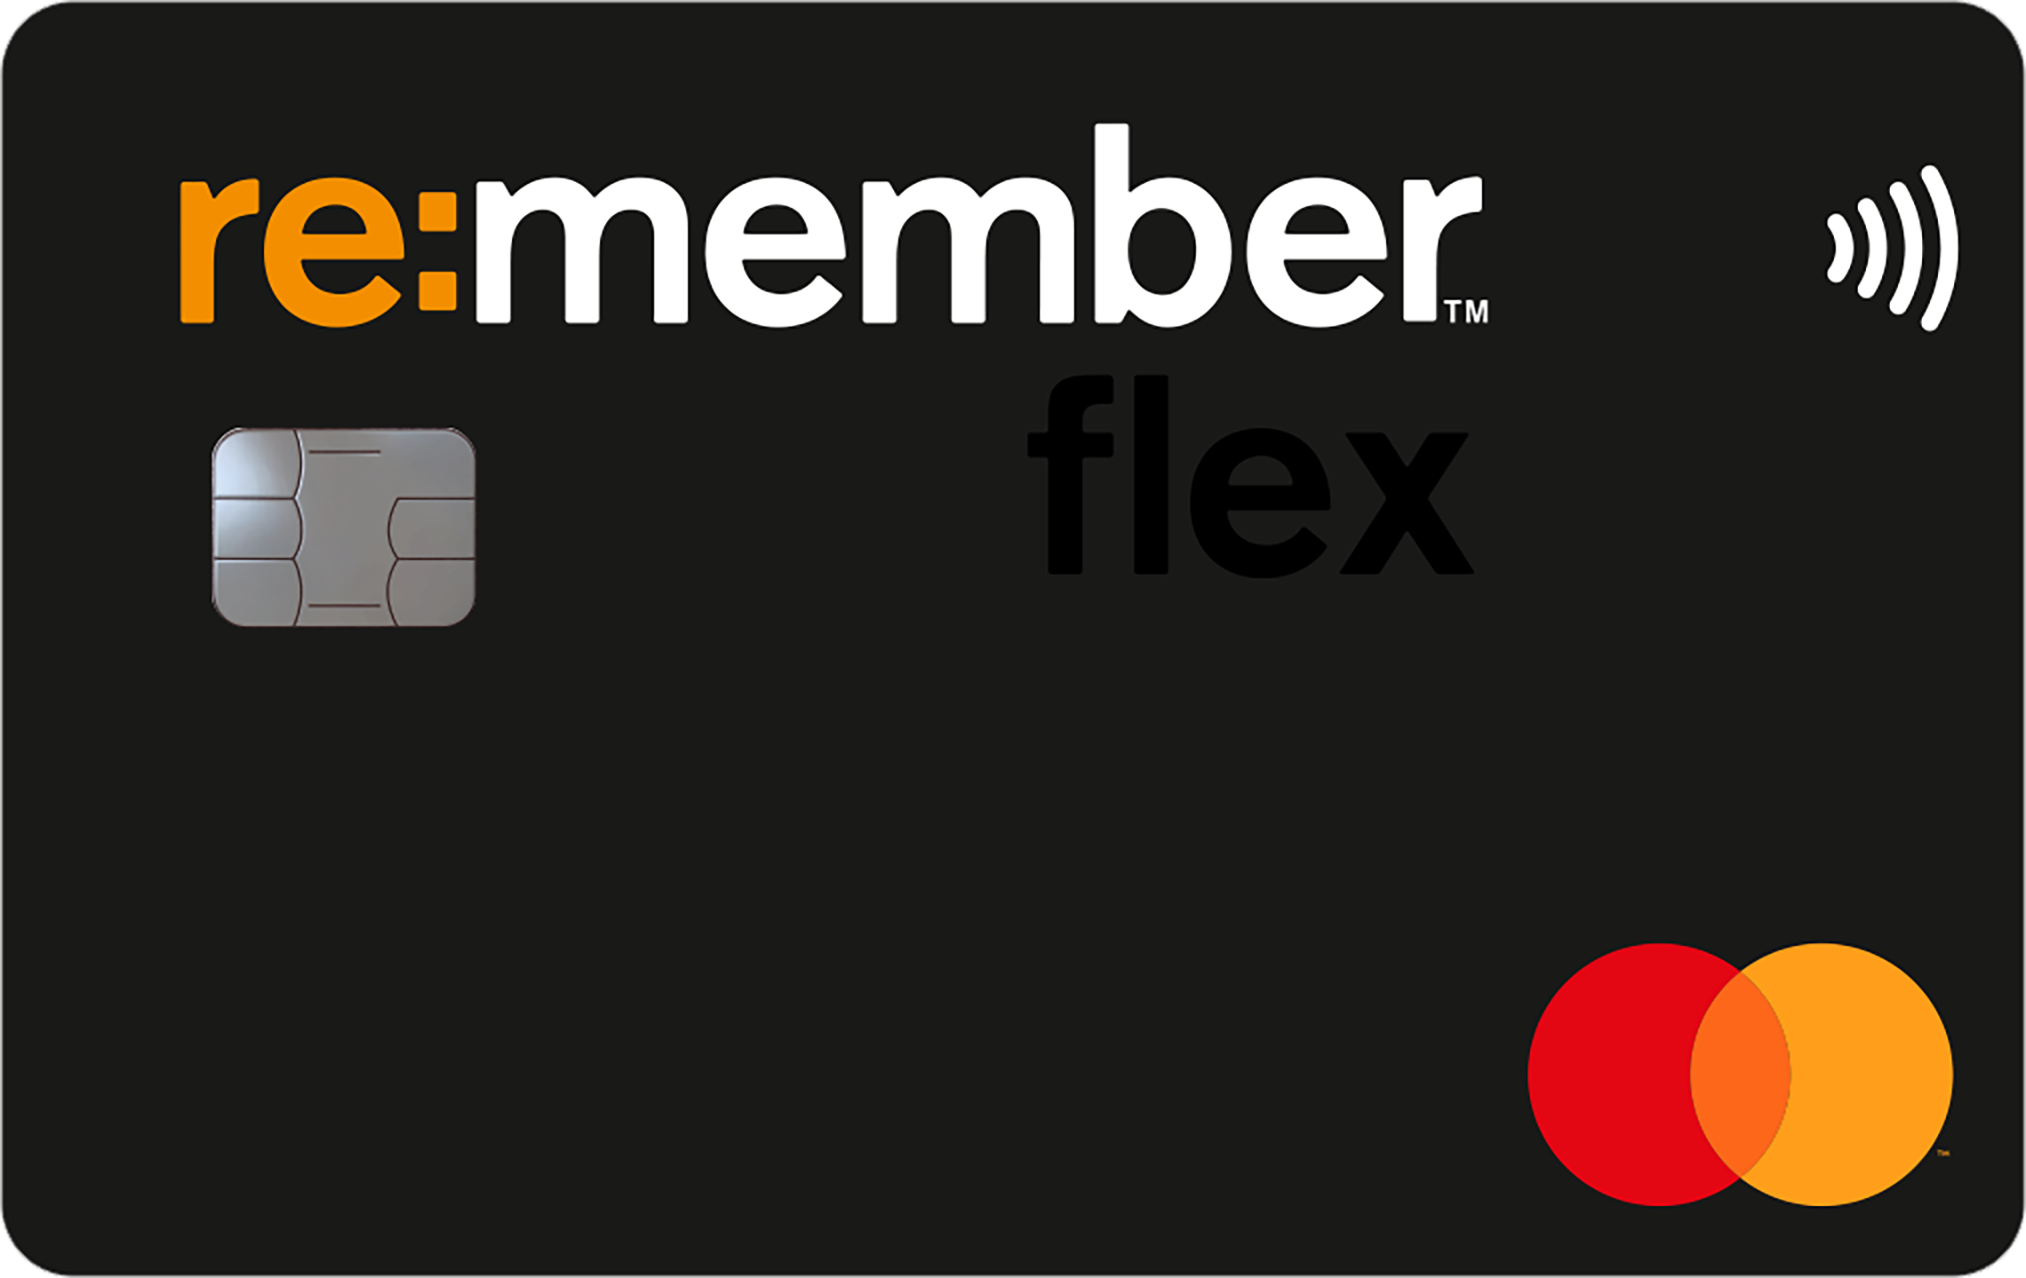 Re:member flex bonuskort